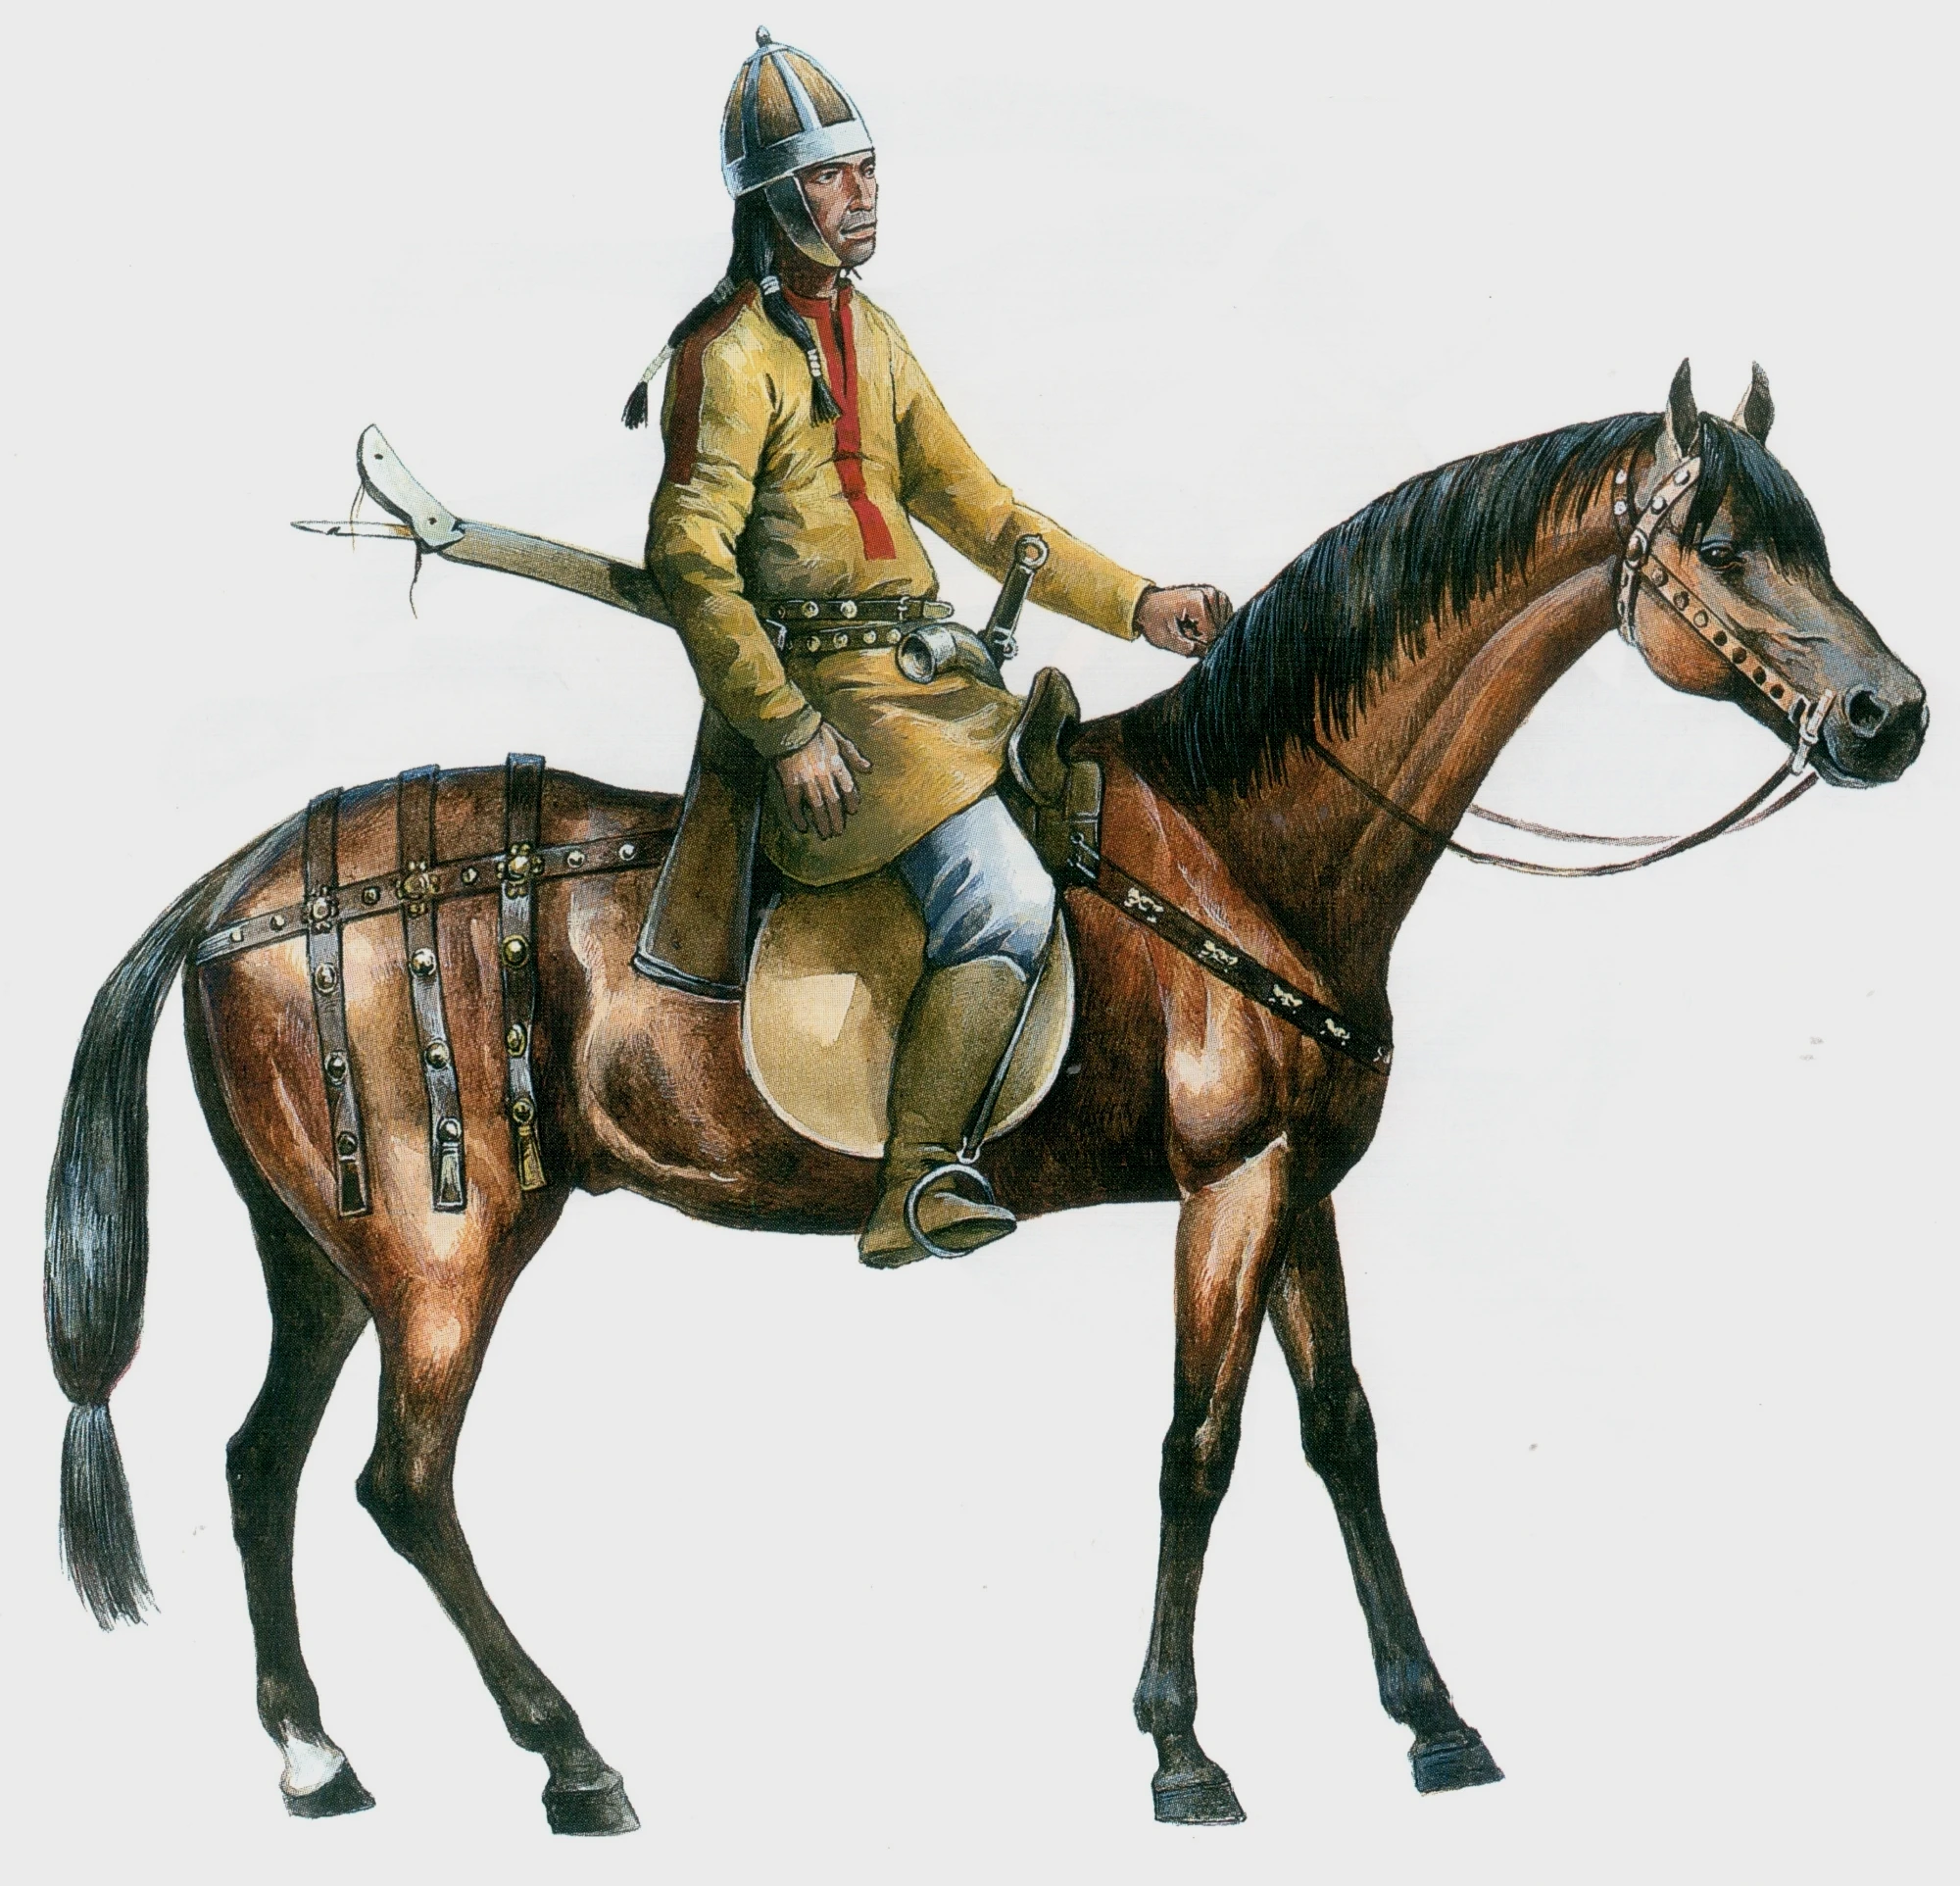 阿瓦尔弓骑兵的复原图，他的复合弓存放在后开口的弓盒里，箭矢存放在身体右侧的箭袋中。他没有披甲，而是戴了一顶欧洲风格的瓣盔提供防御。